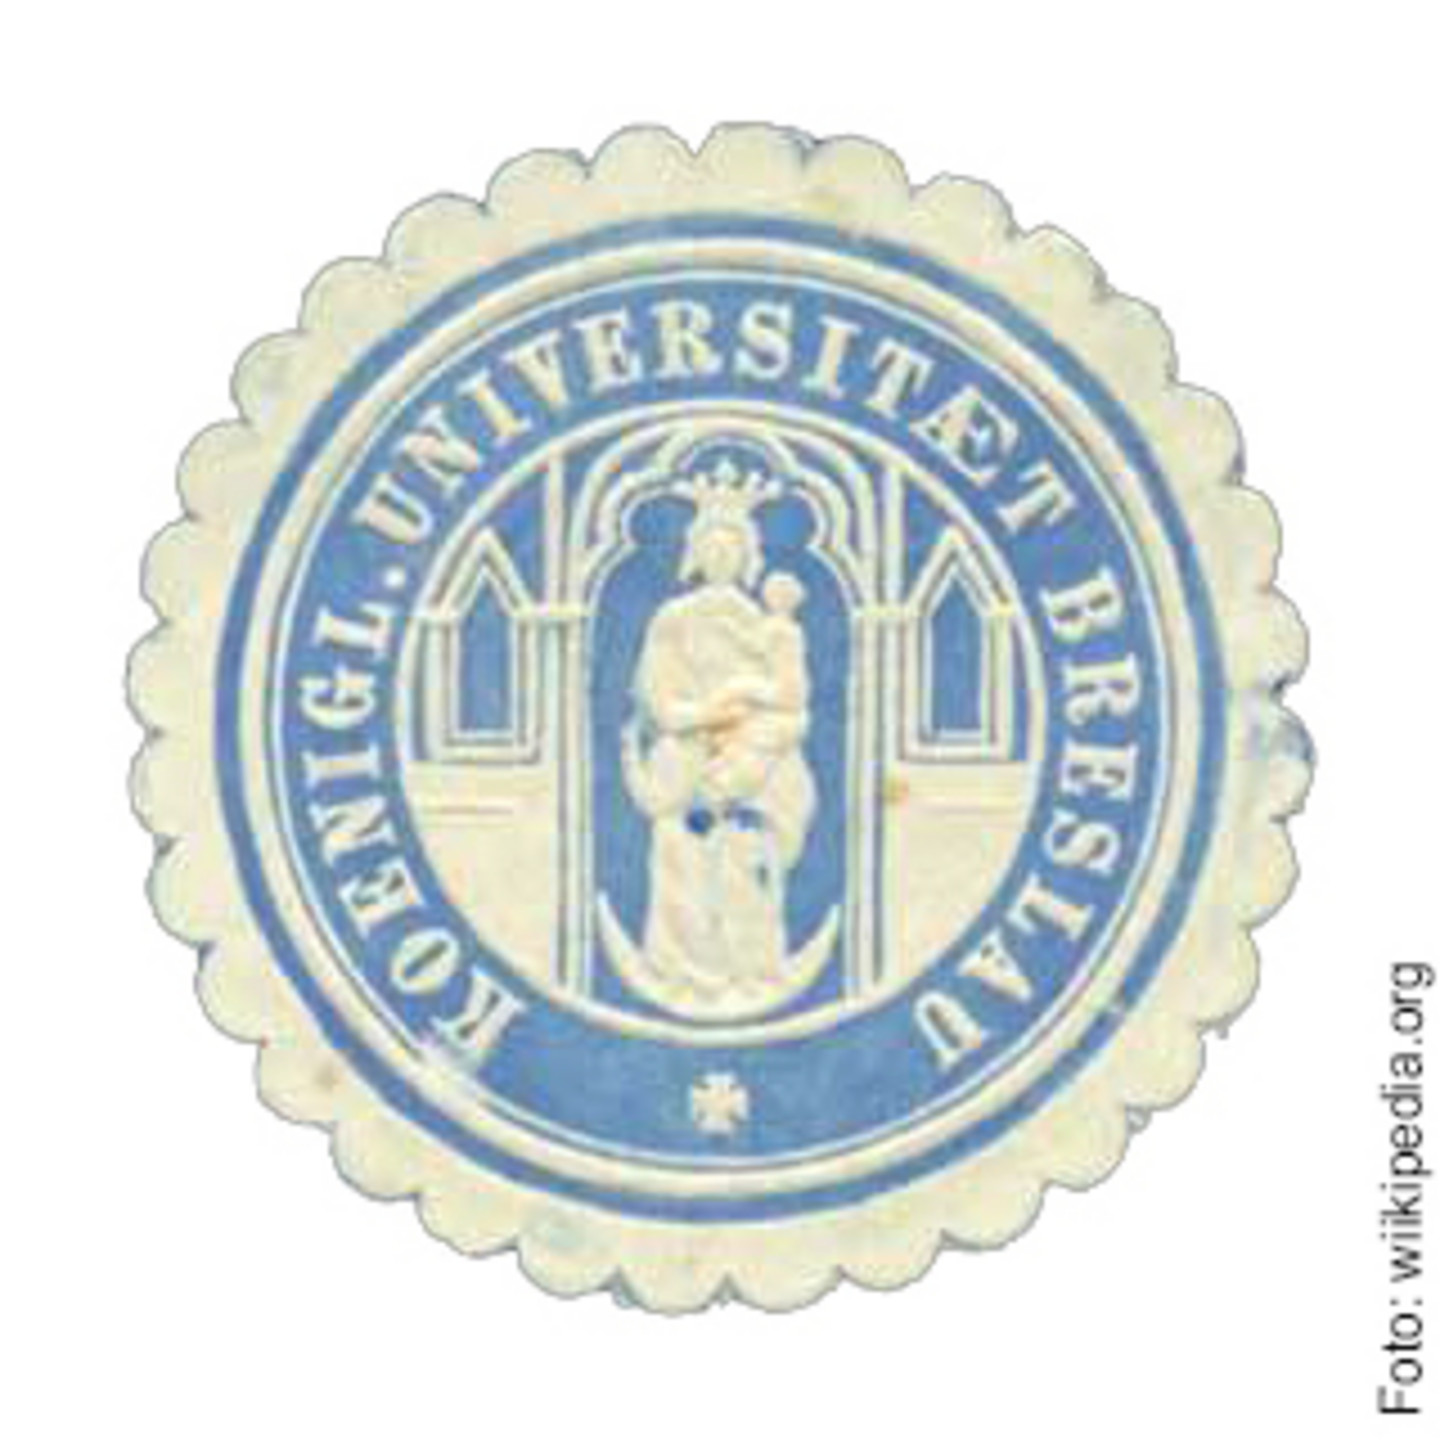 Abbildung der blauen Siegelmarke der Universität Breslau.